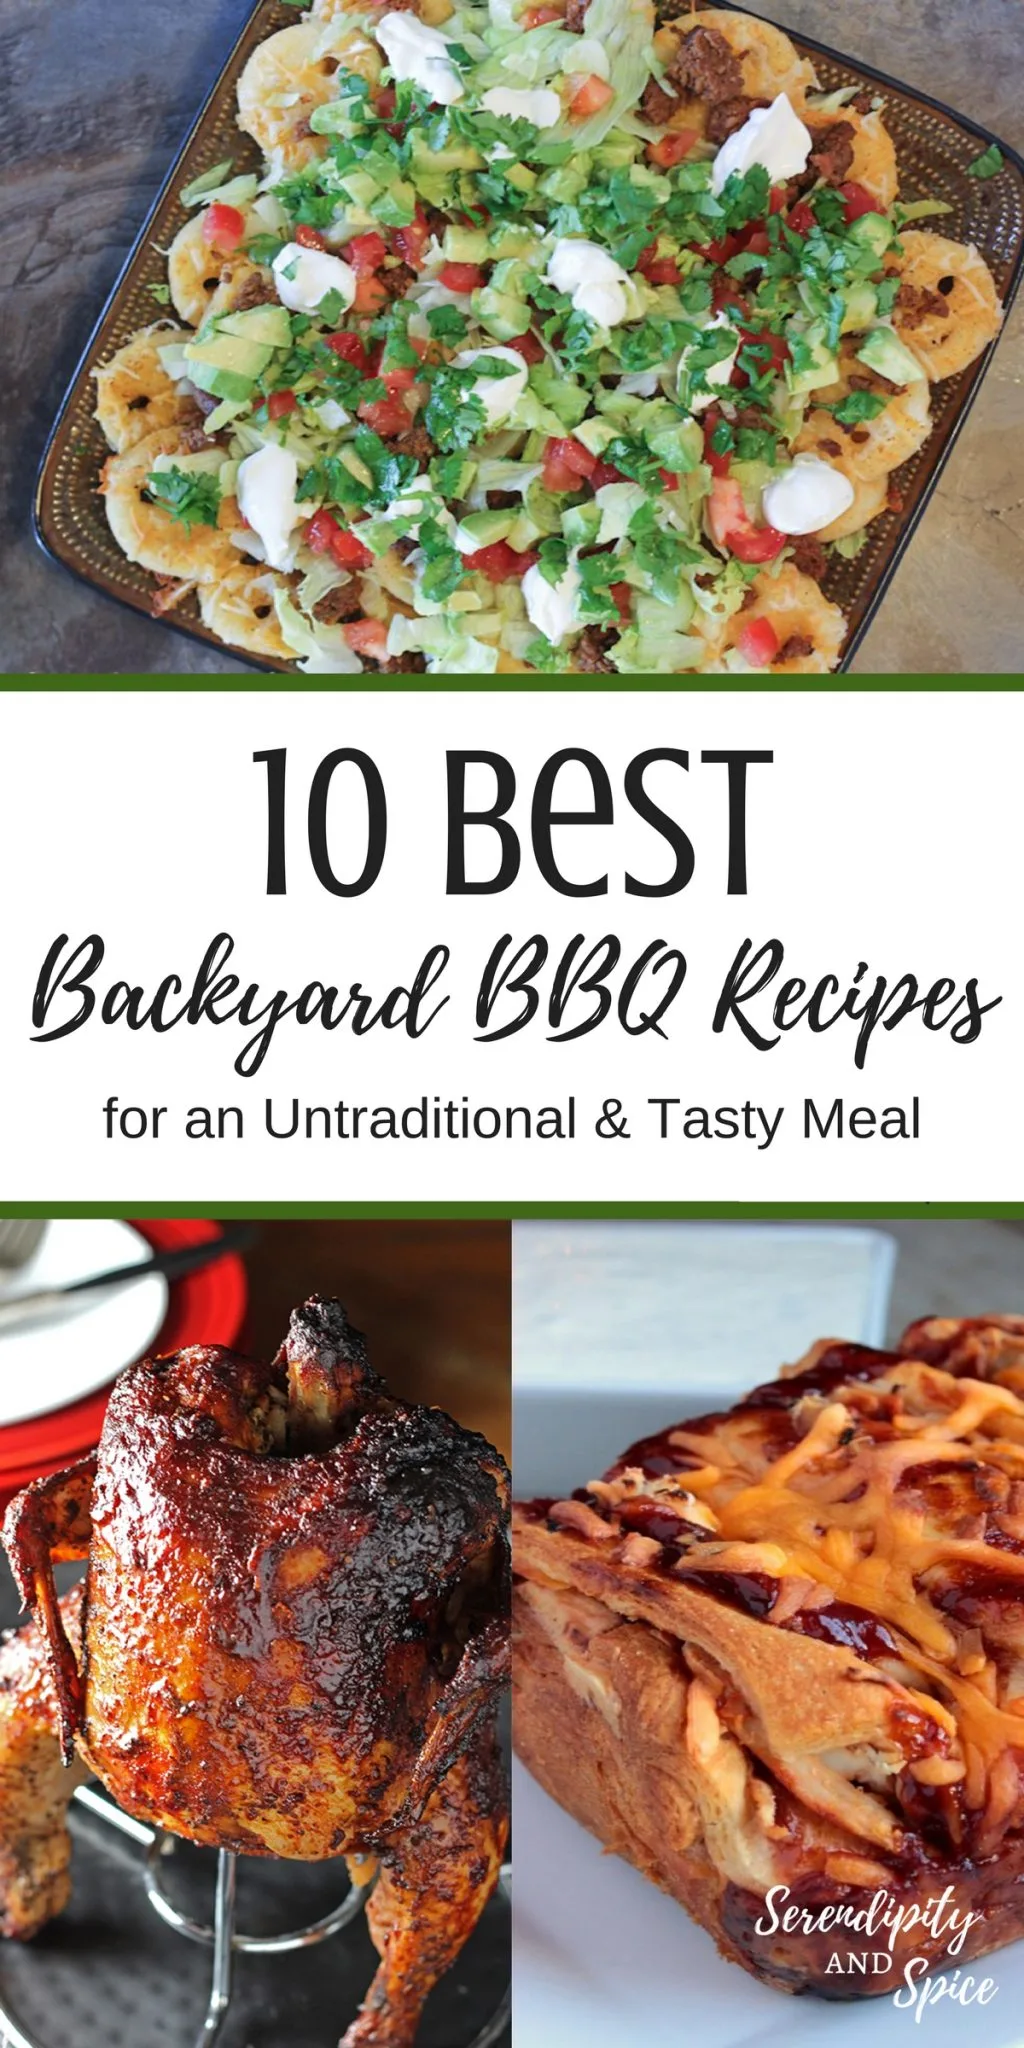 10 Best Backyard BBQ Recipes